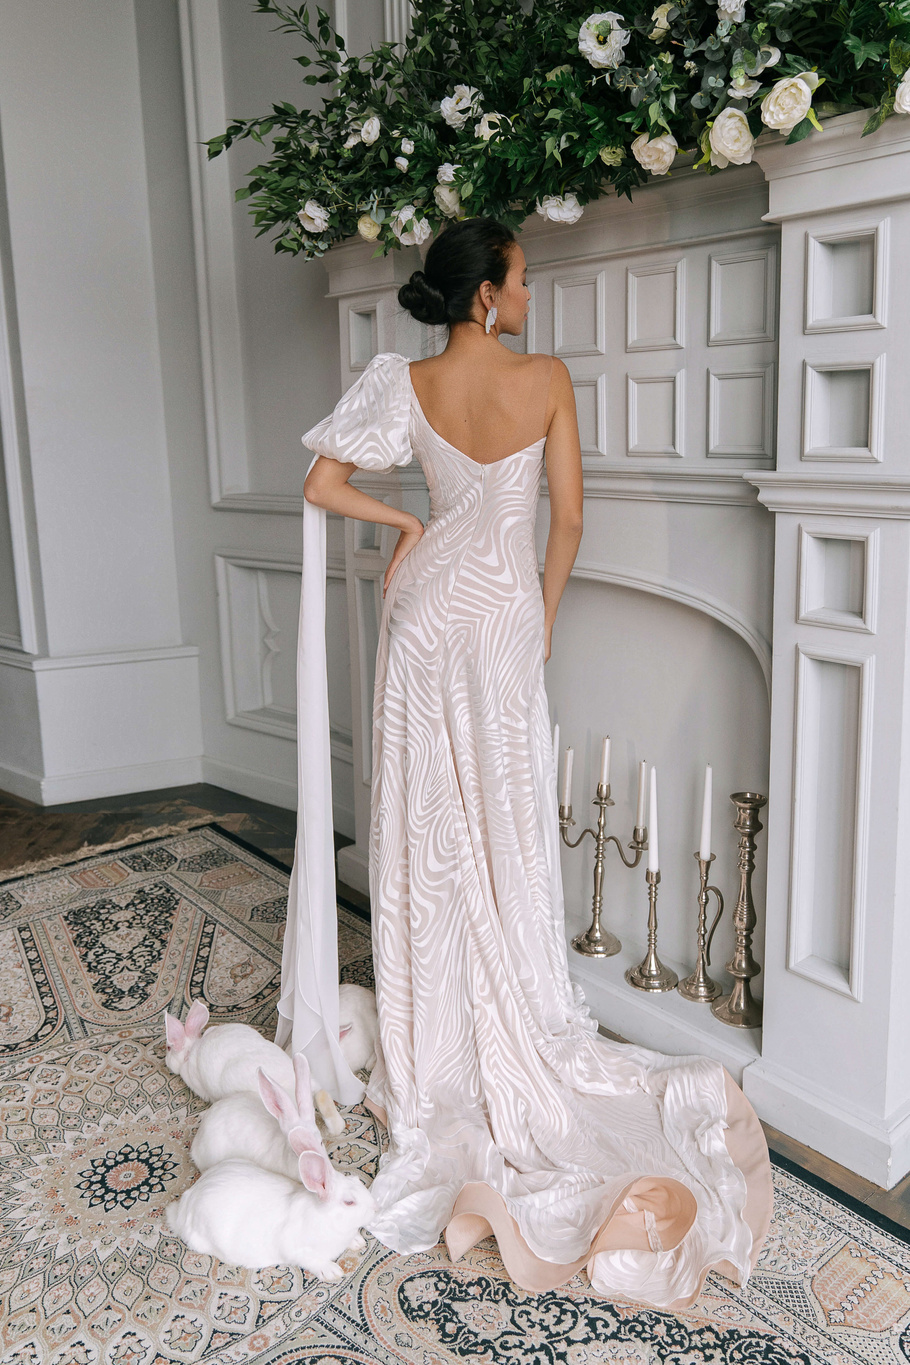 Купить свадебное платье «Физалия» Рара Авис из коллекции Искра 2021 года в интернет-магазине